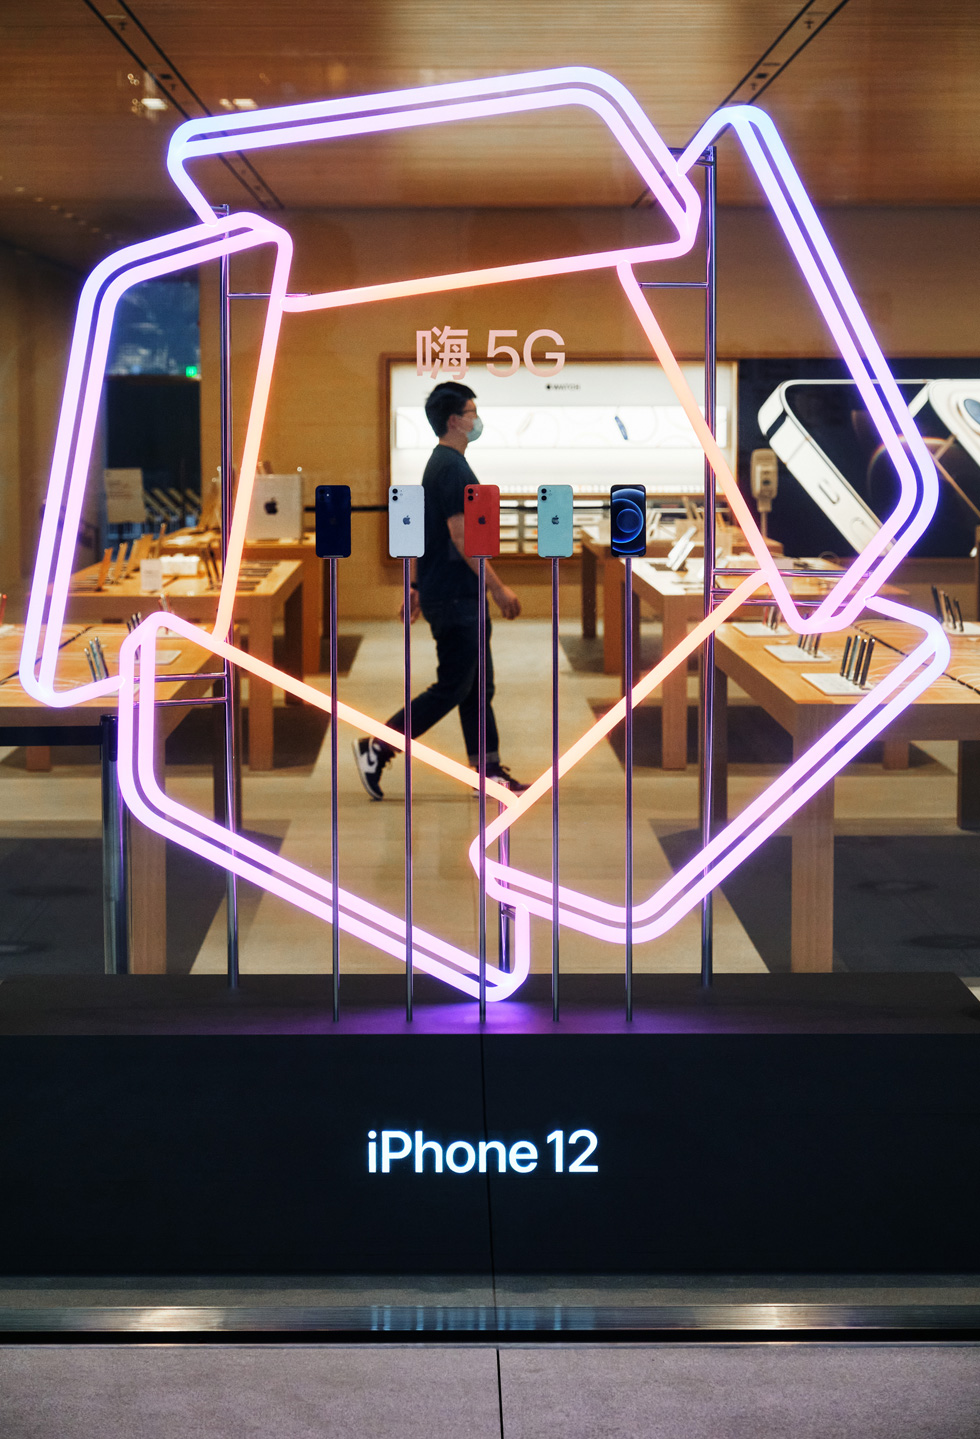 Fönsterskyltning på Apple Sanlitun som visar de nya iPhone 12-modellerna.